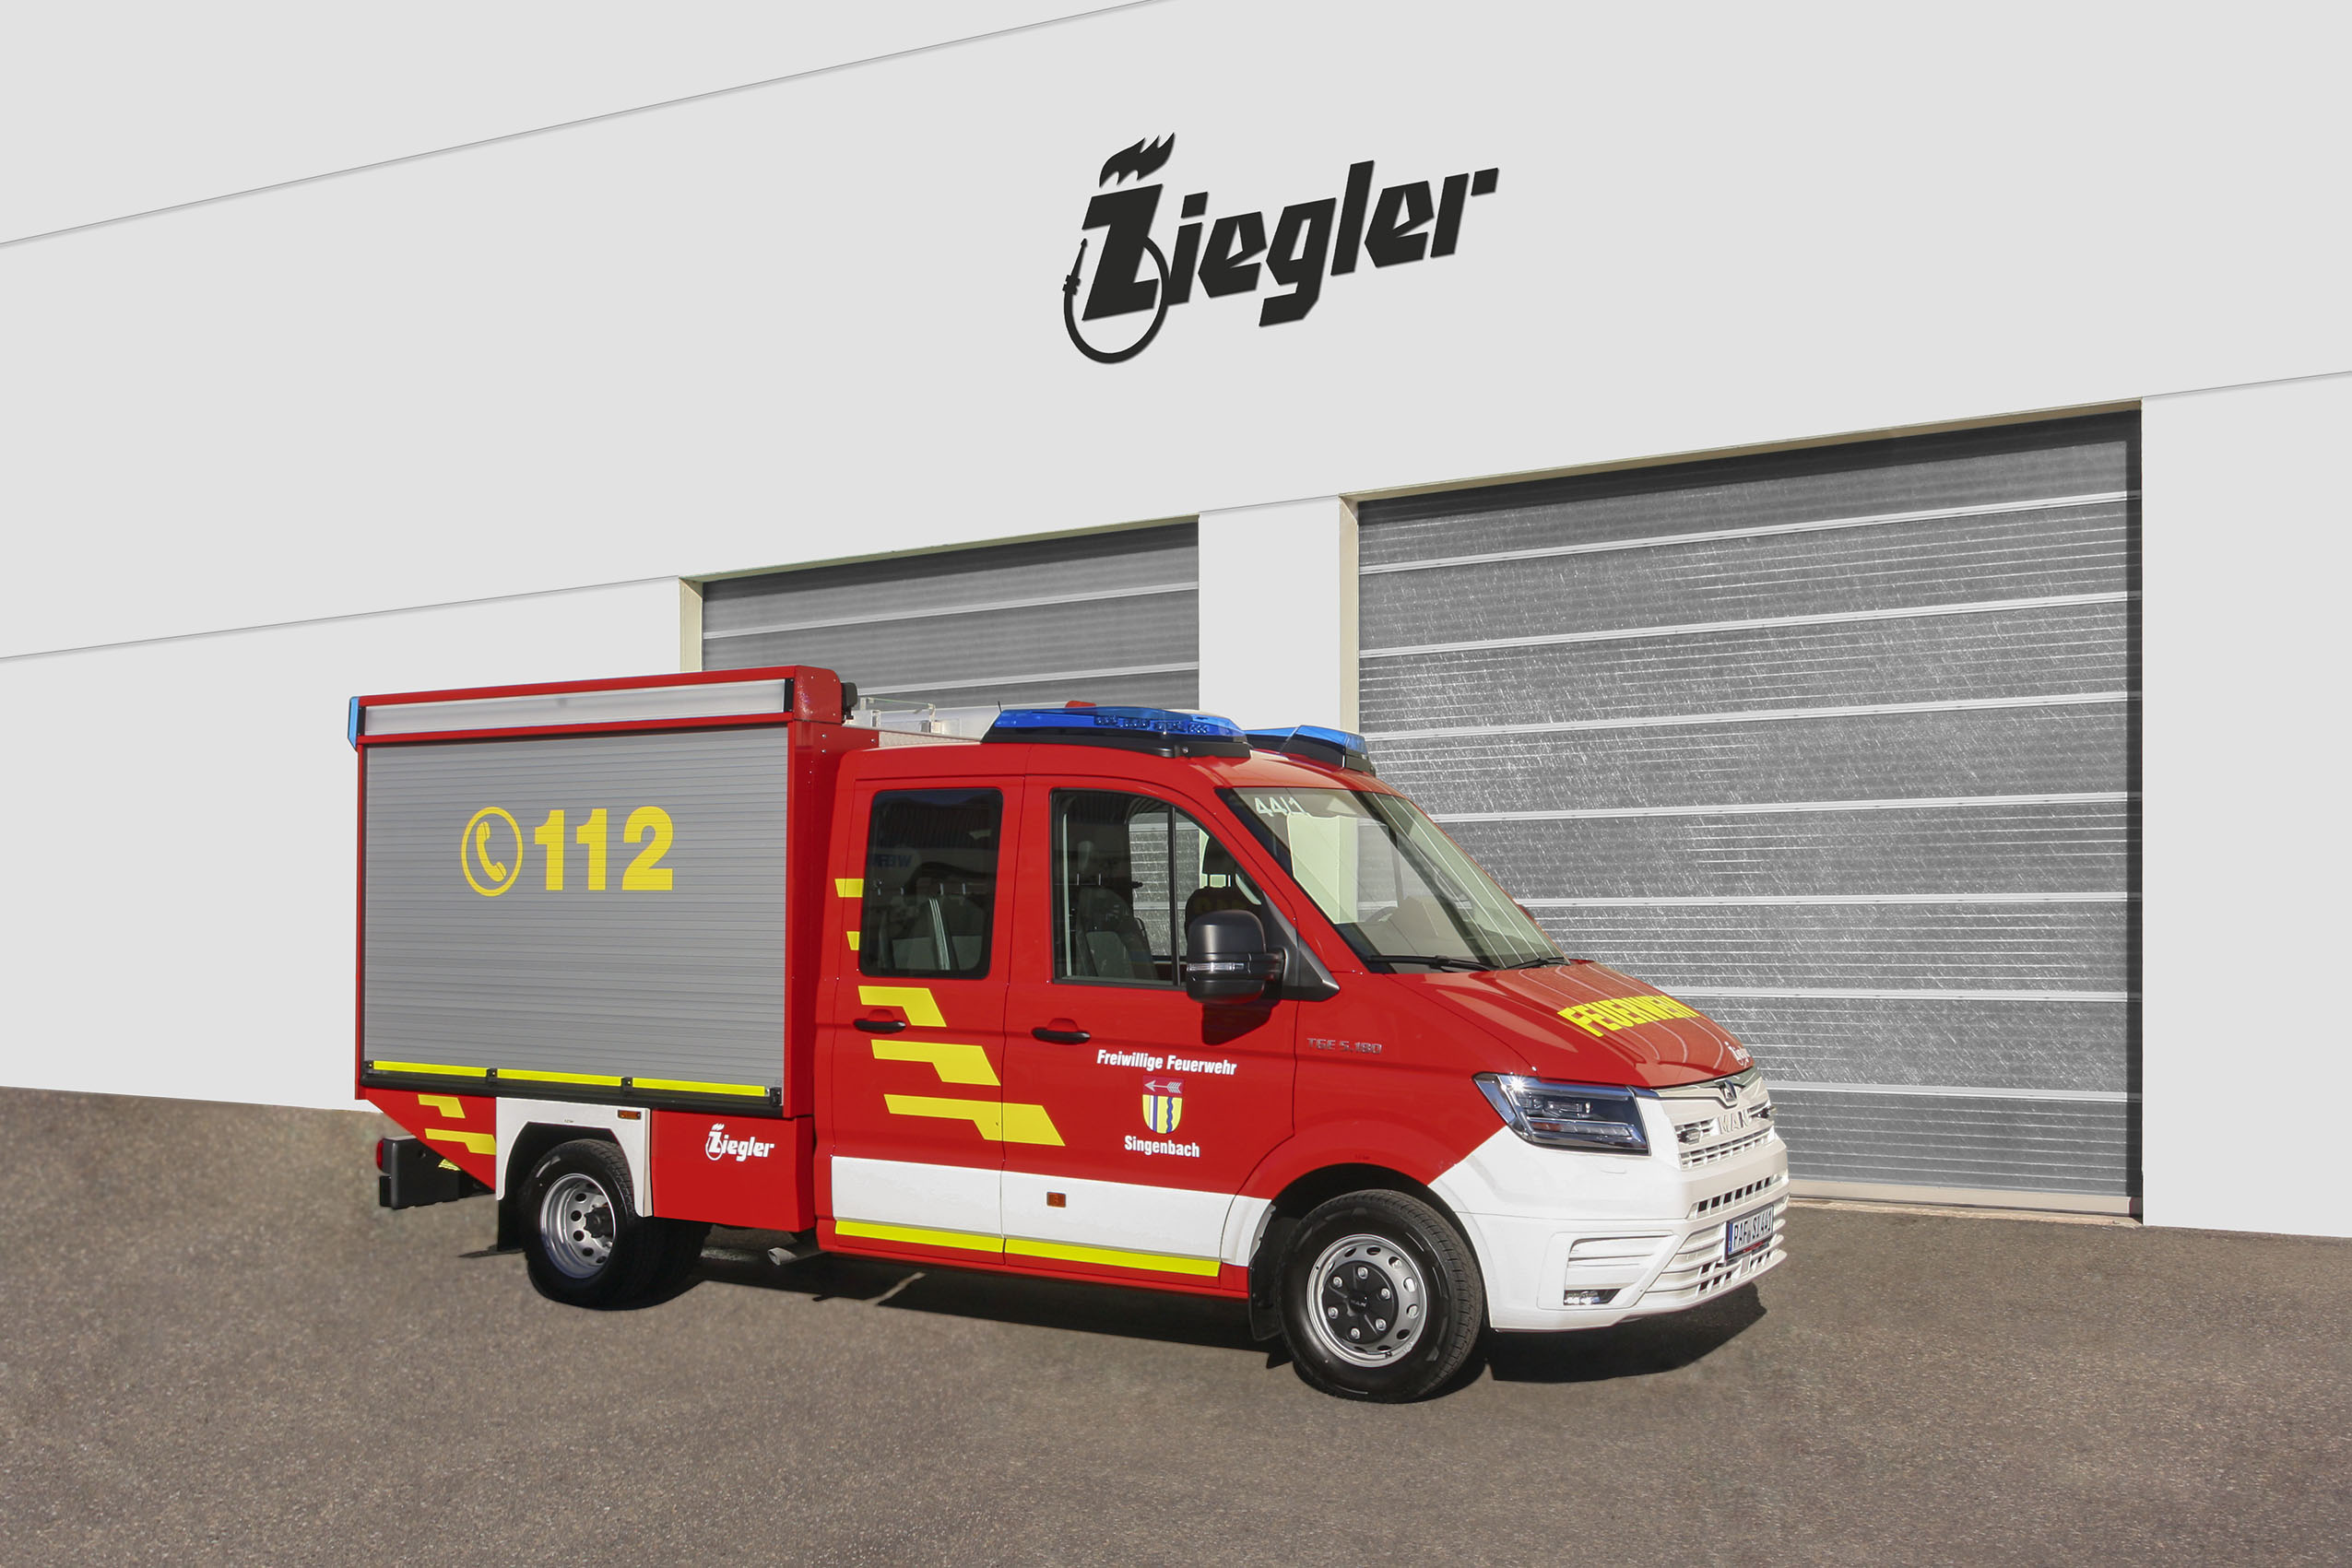 Erster elektrischer Rettungswagen der Feuerwehr Hannover in Dienst gestellt  - BOS-Fahrzeuge - Einsatzfahrzeuge und Wachen weltweit